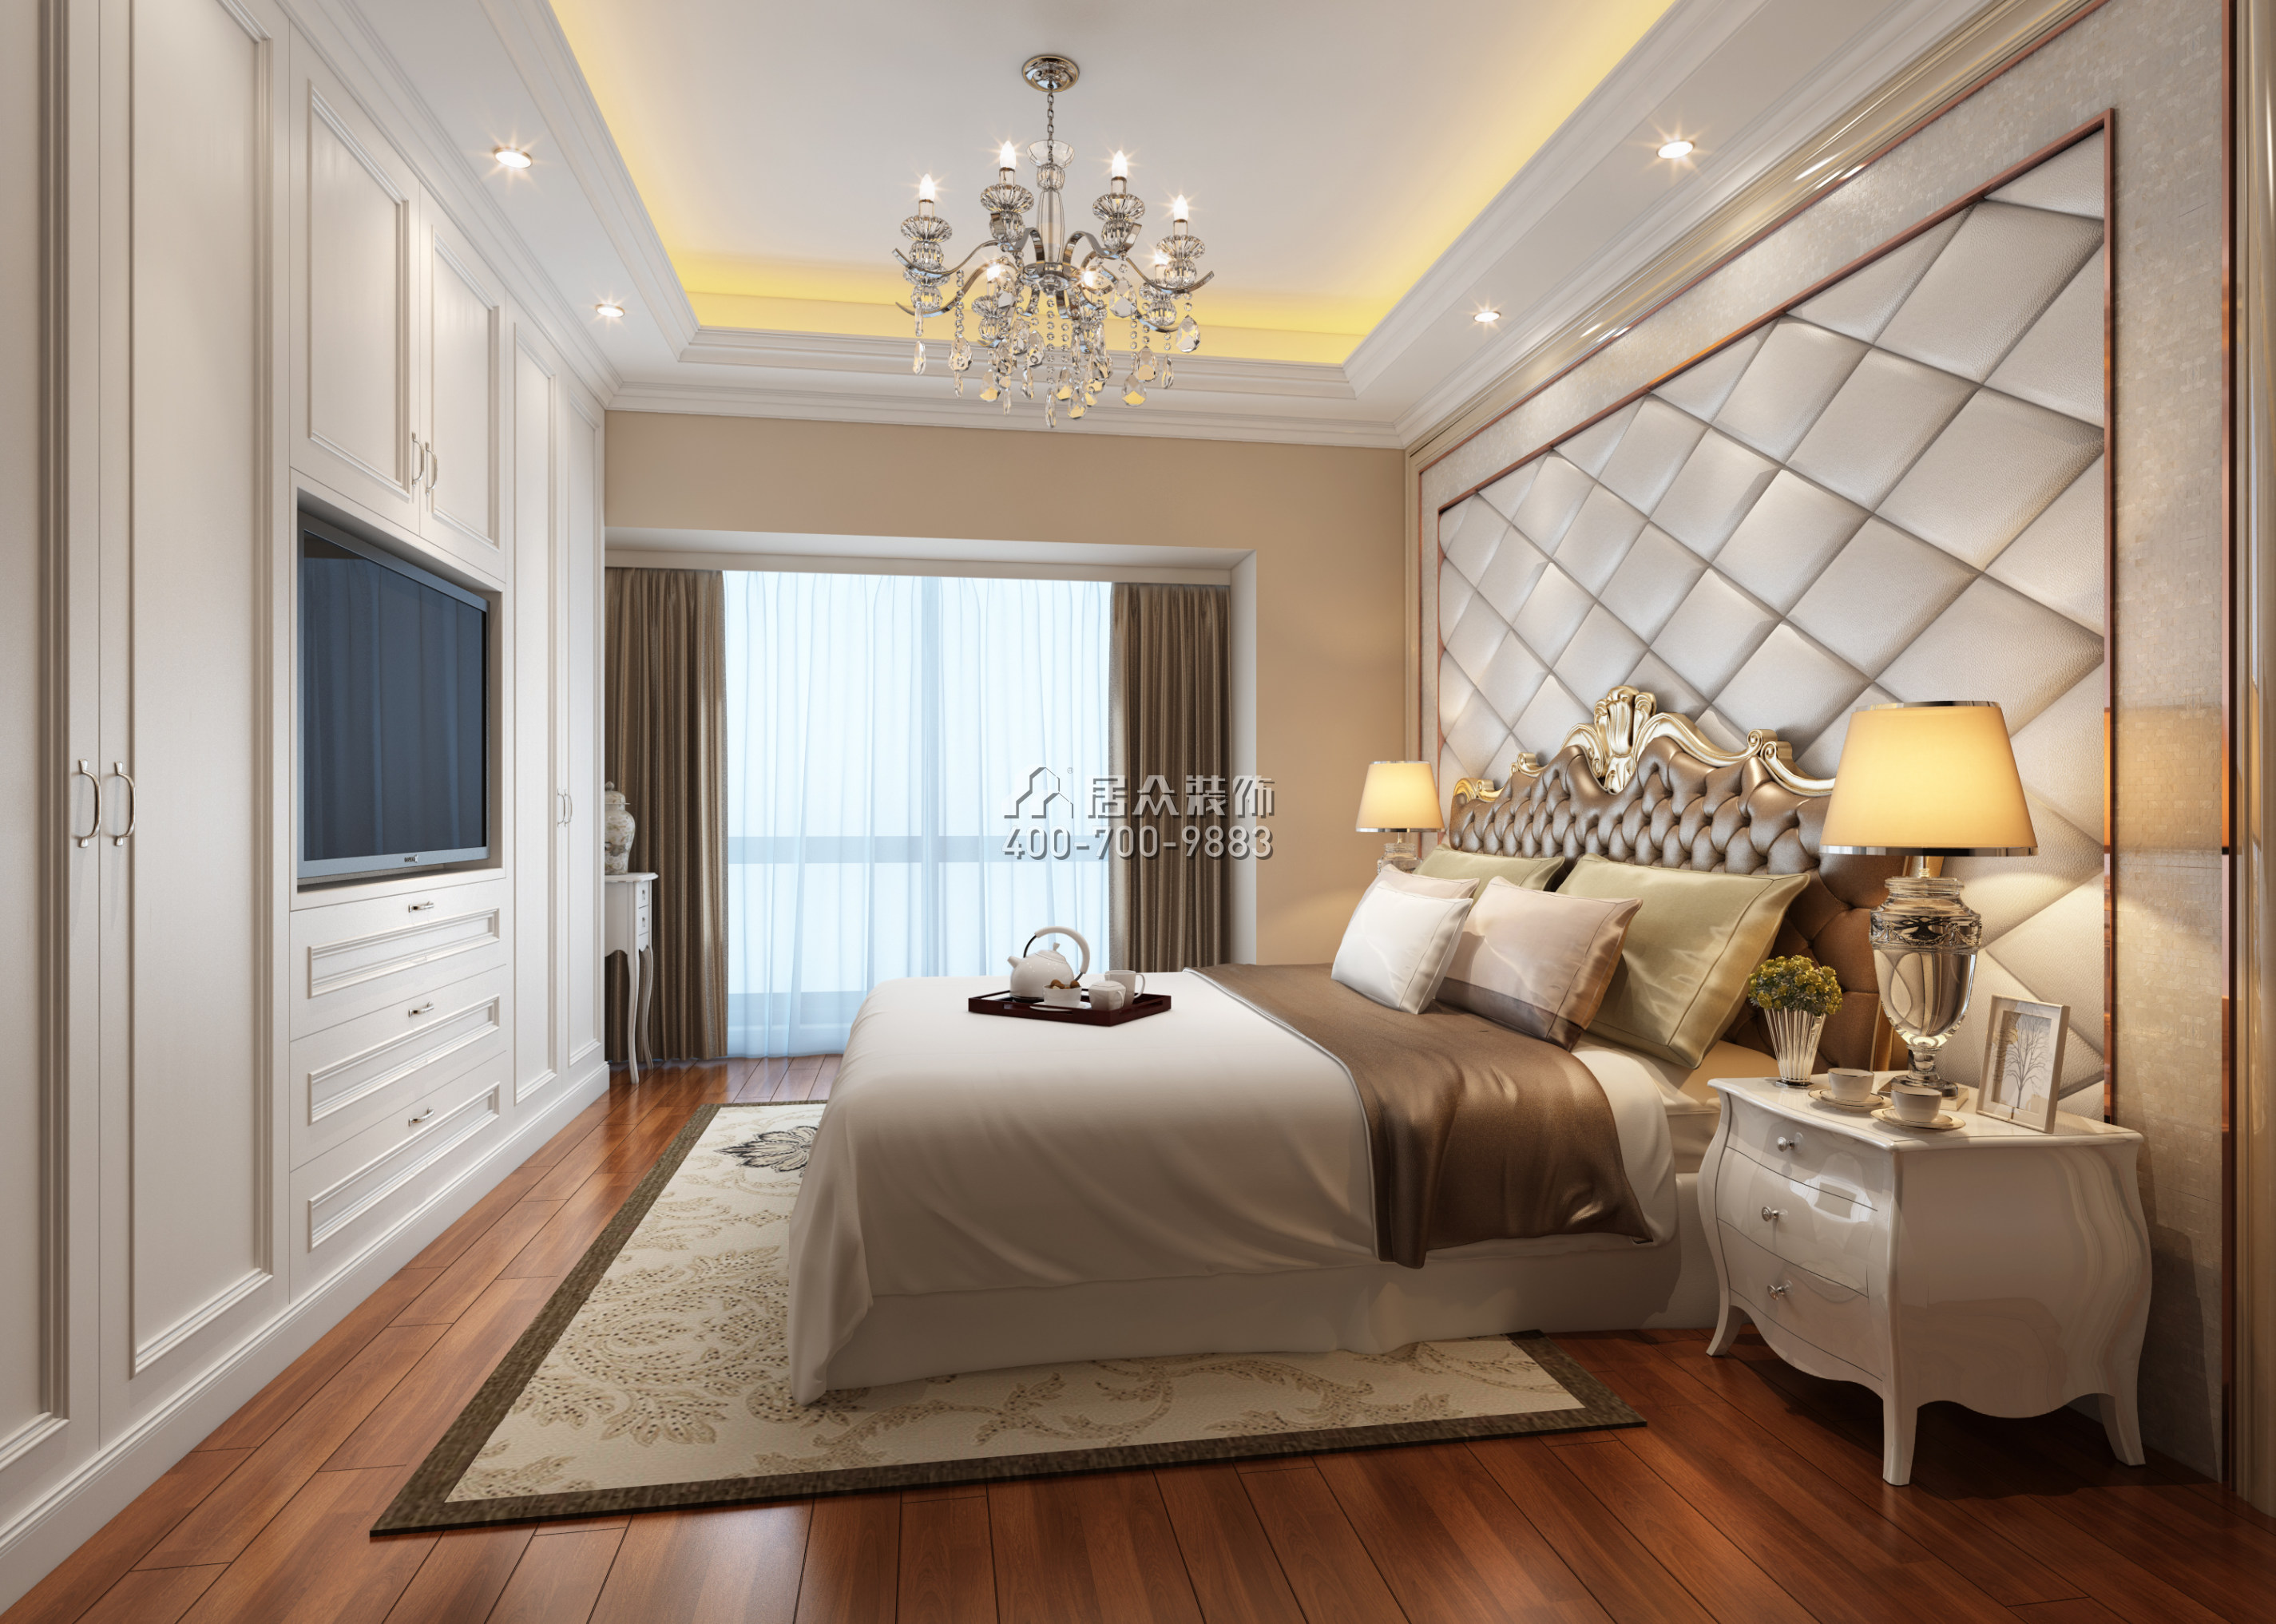 山语清晖一期180平方米欧式风格平层户型卧室装修效果图